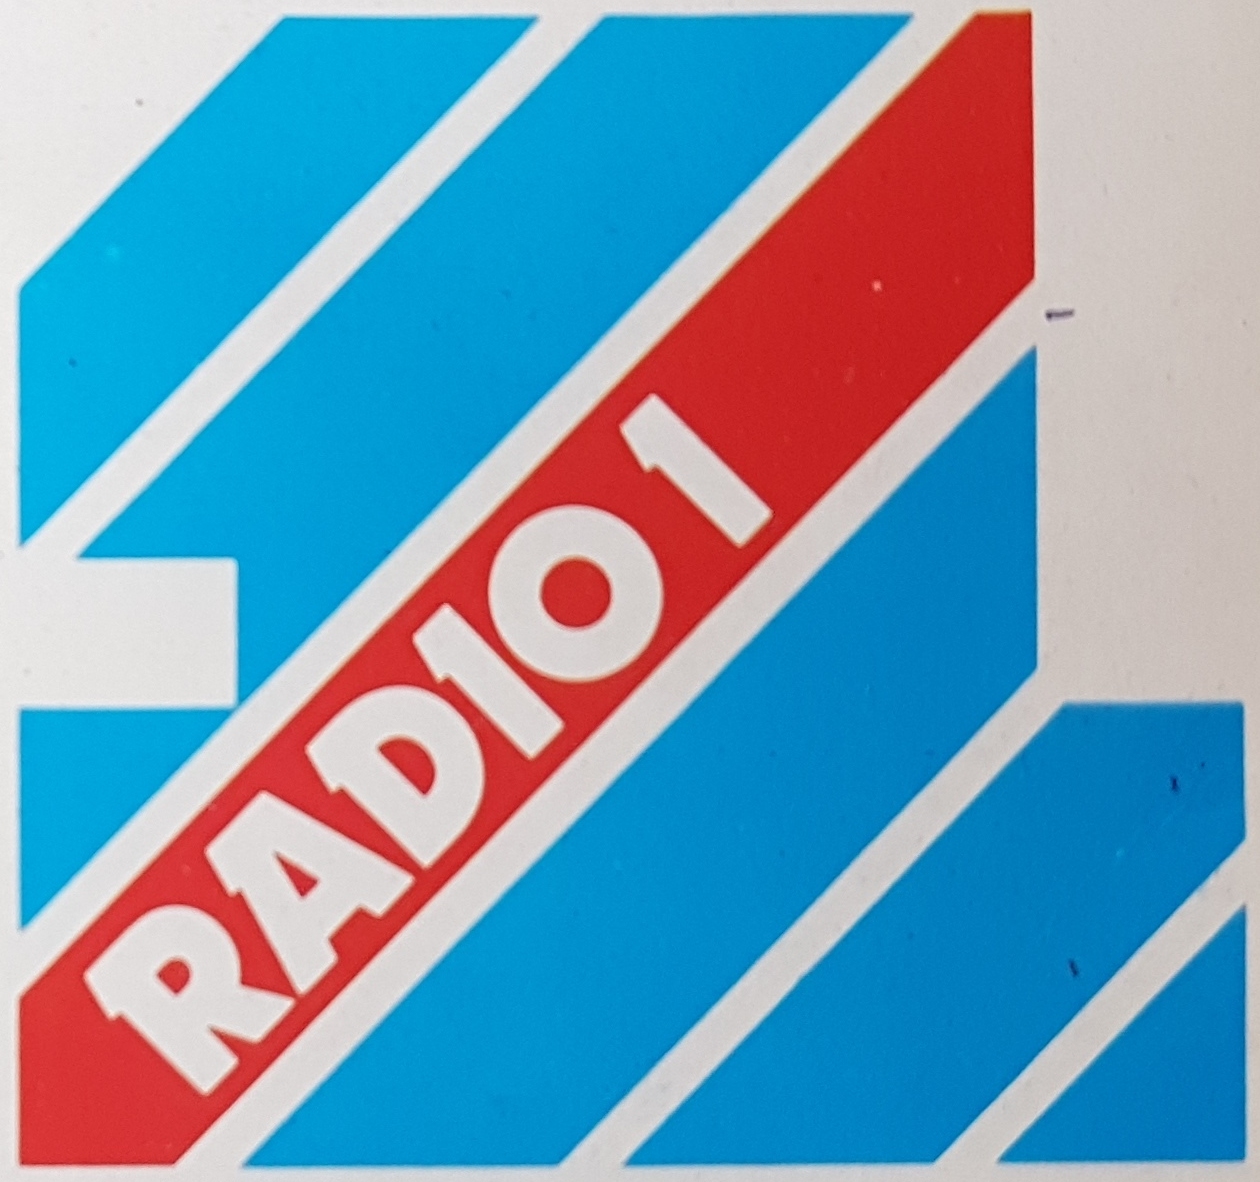 BBC Radio 1 label